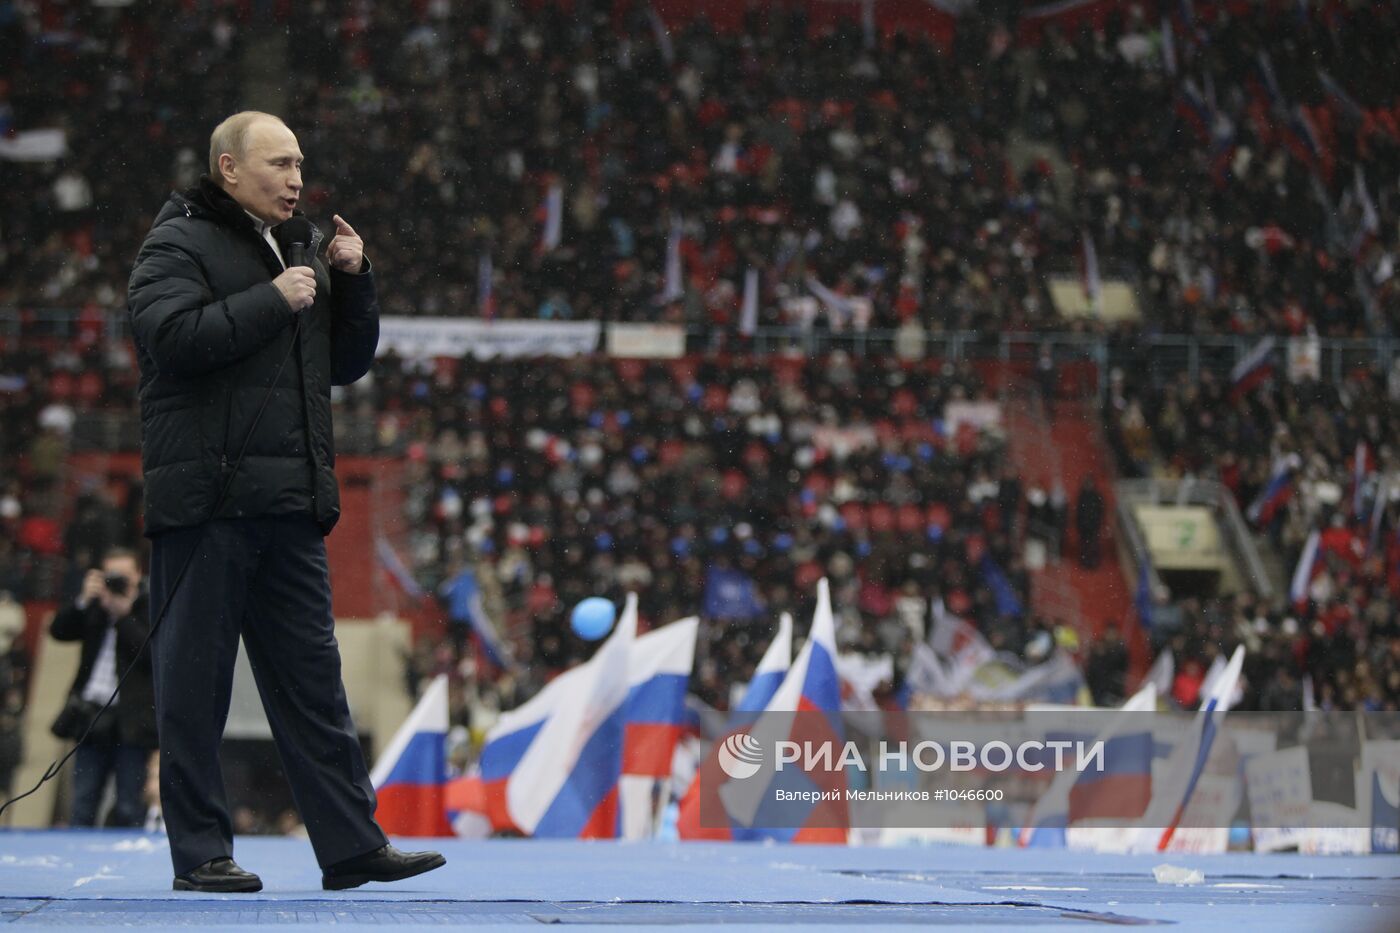 Премьер-министр РФ Владимир Путин на митинге "Защитим страну!"